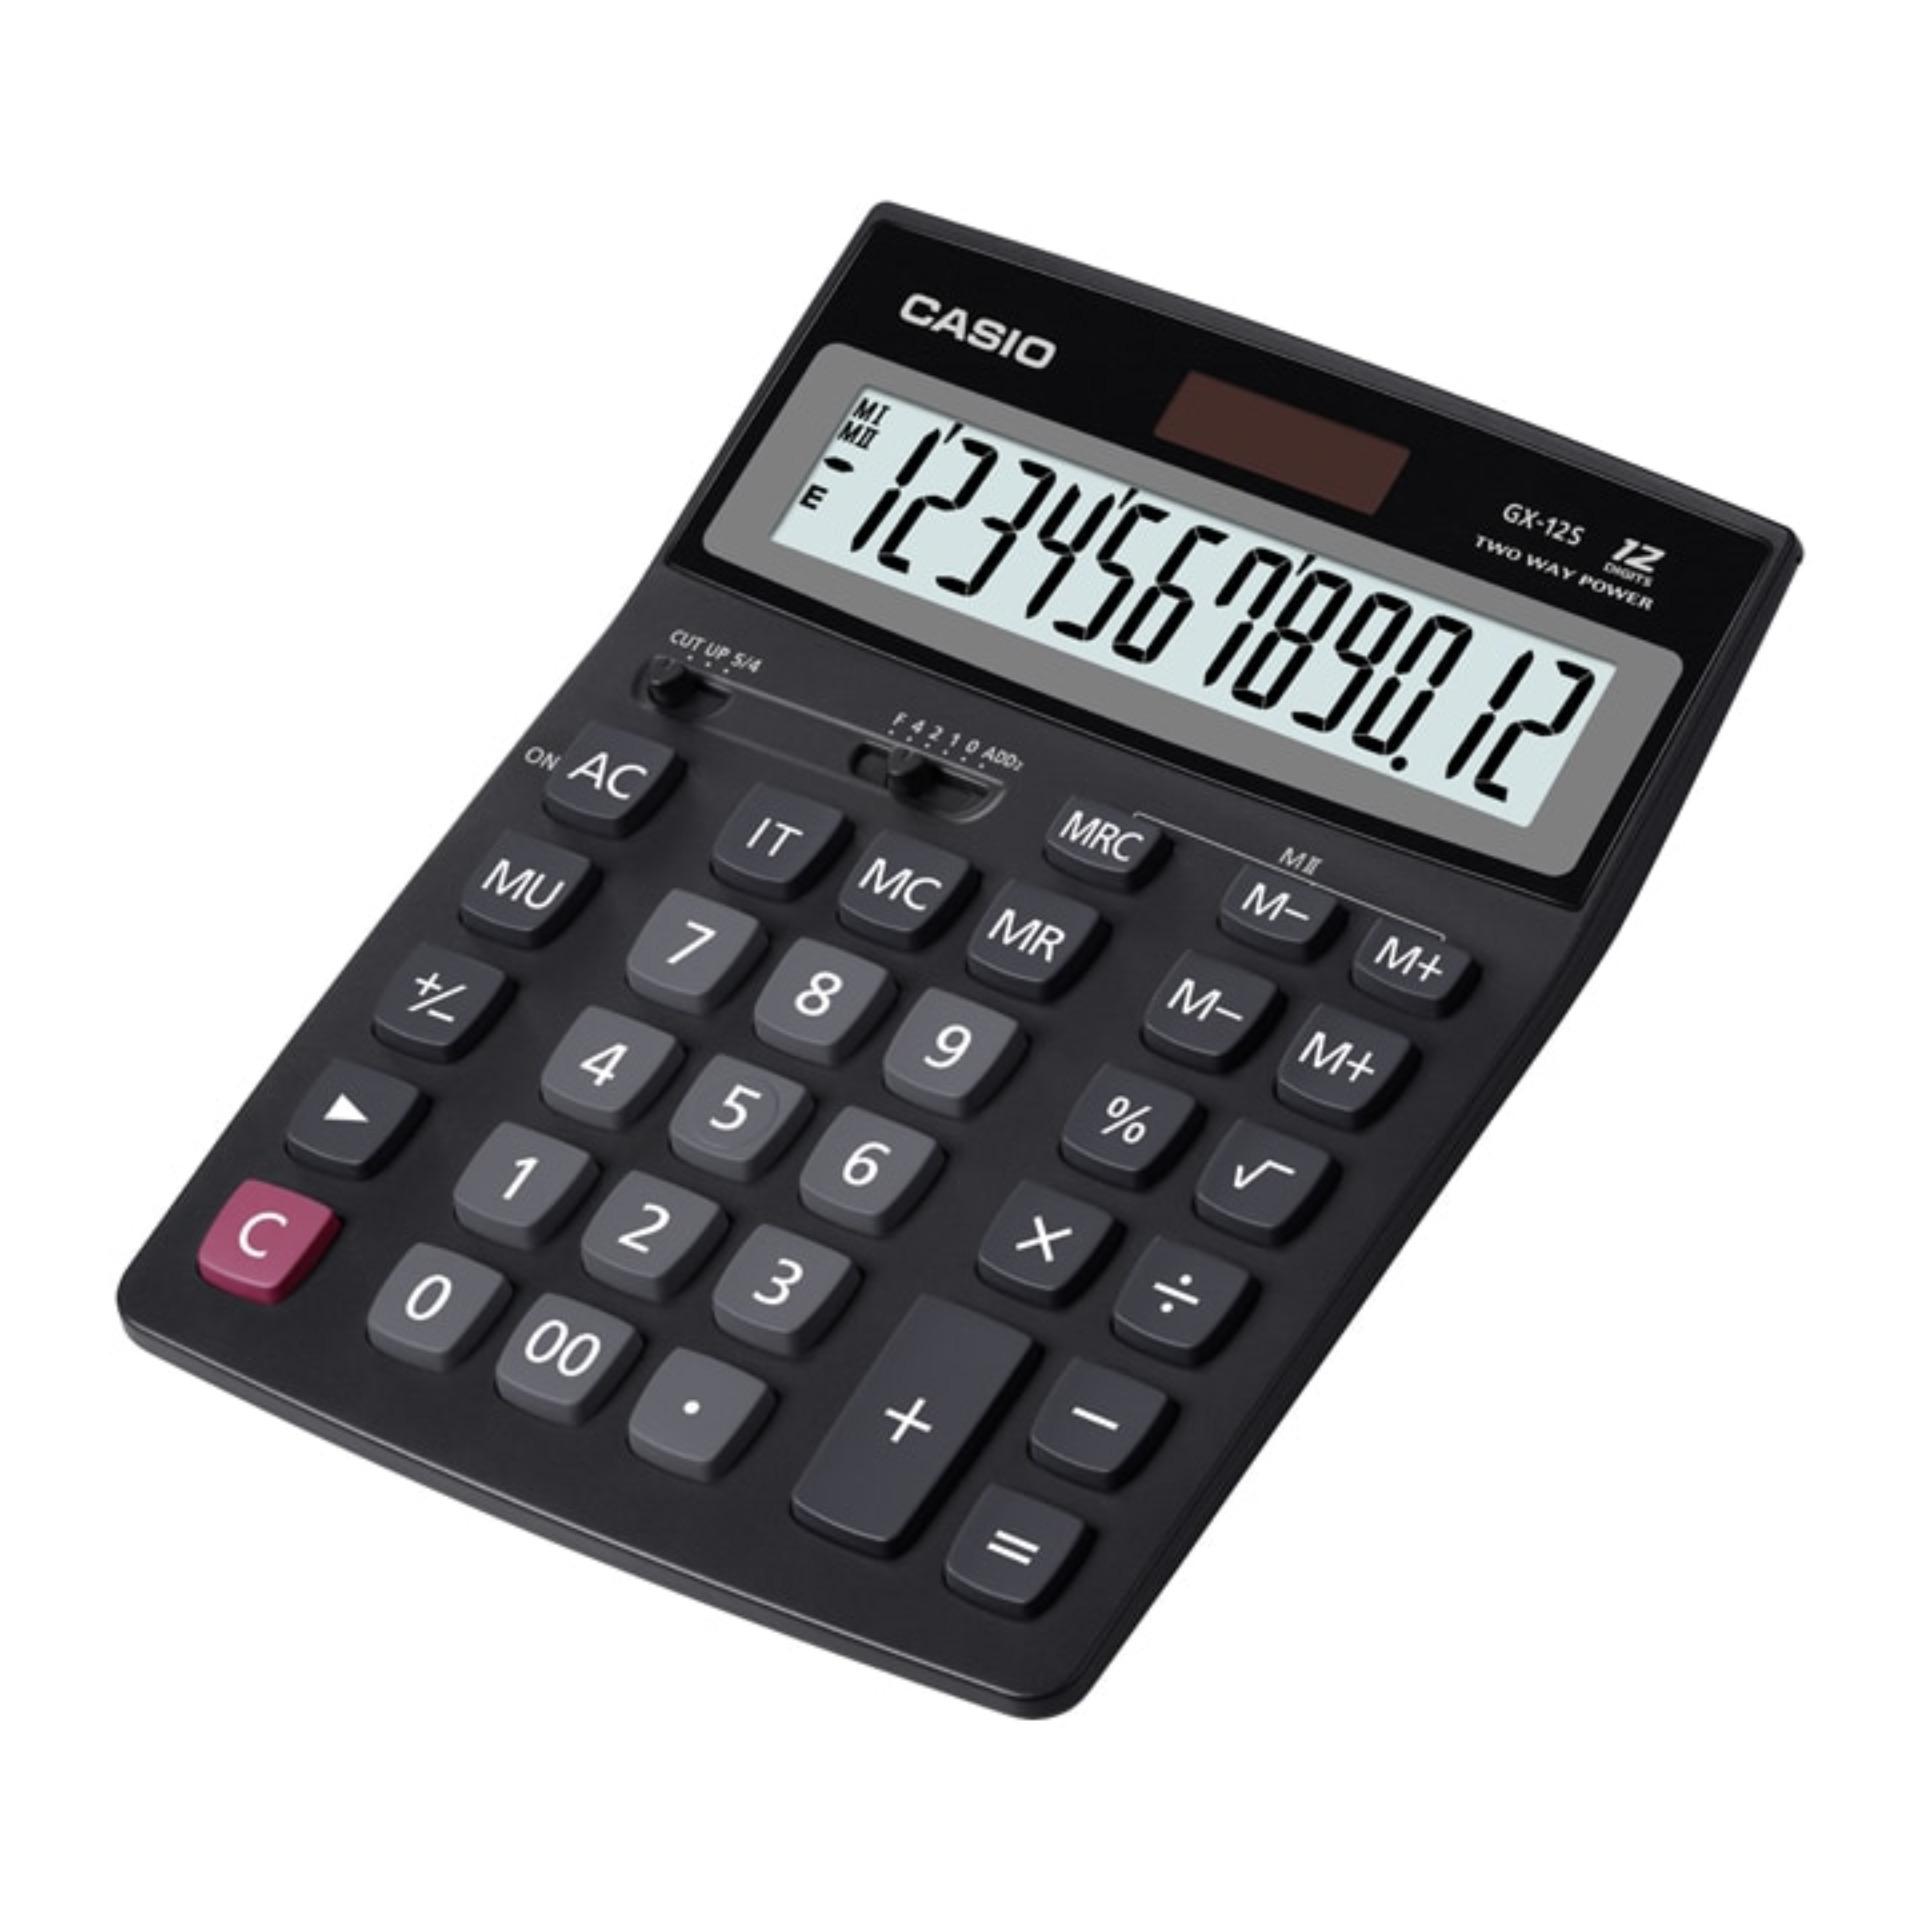 Casio Calculator GX-12S - Hitam